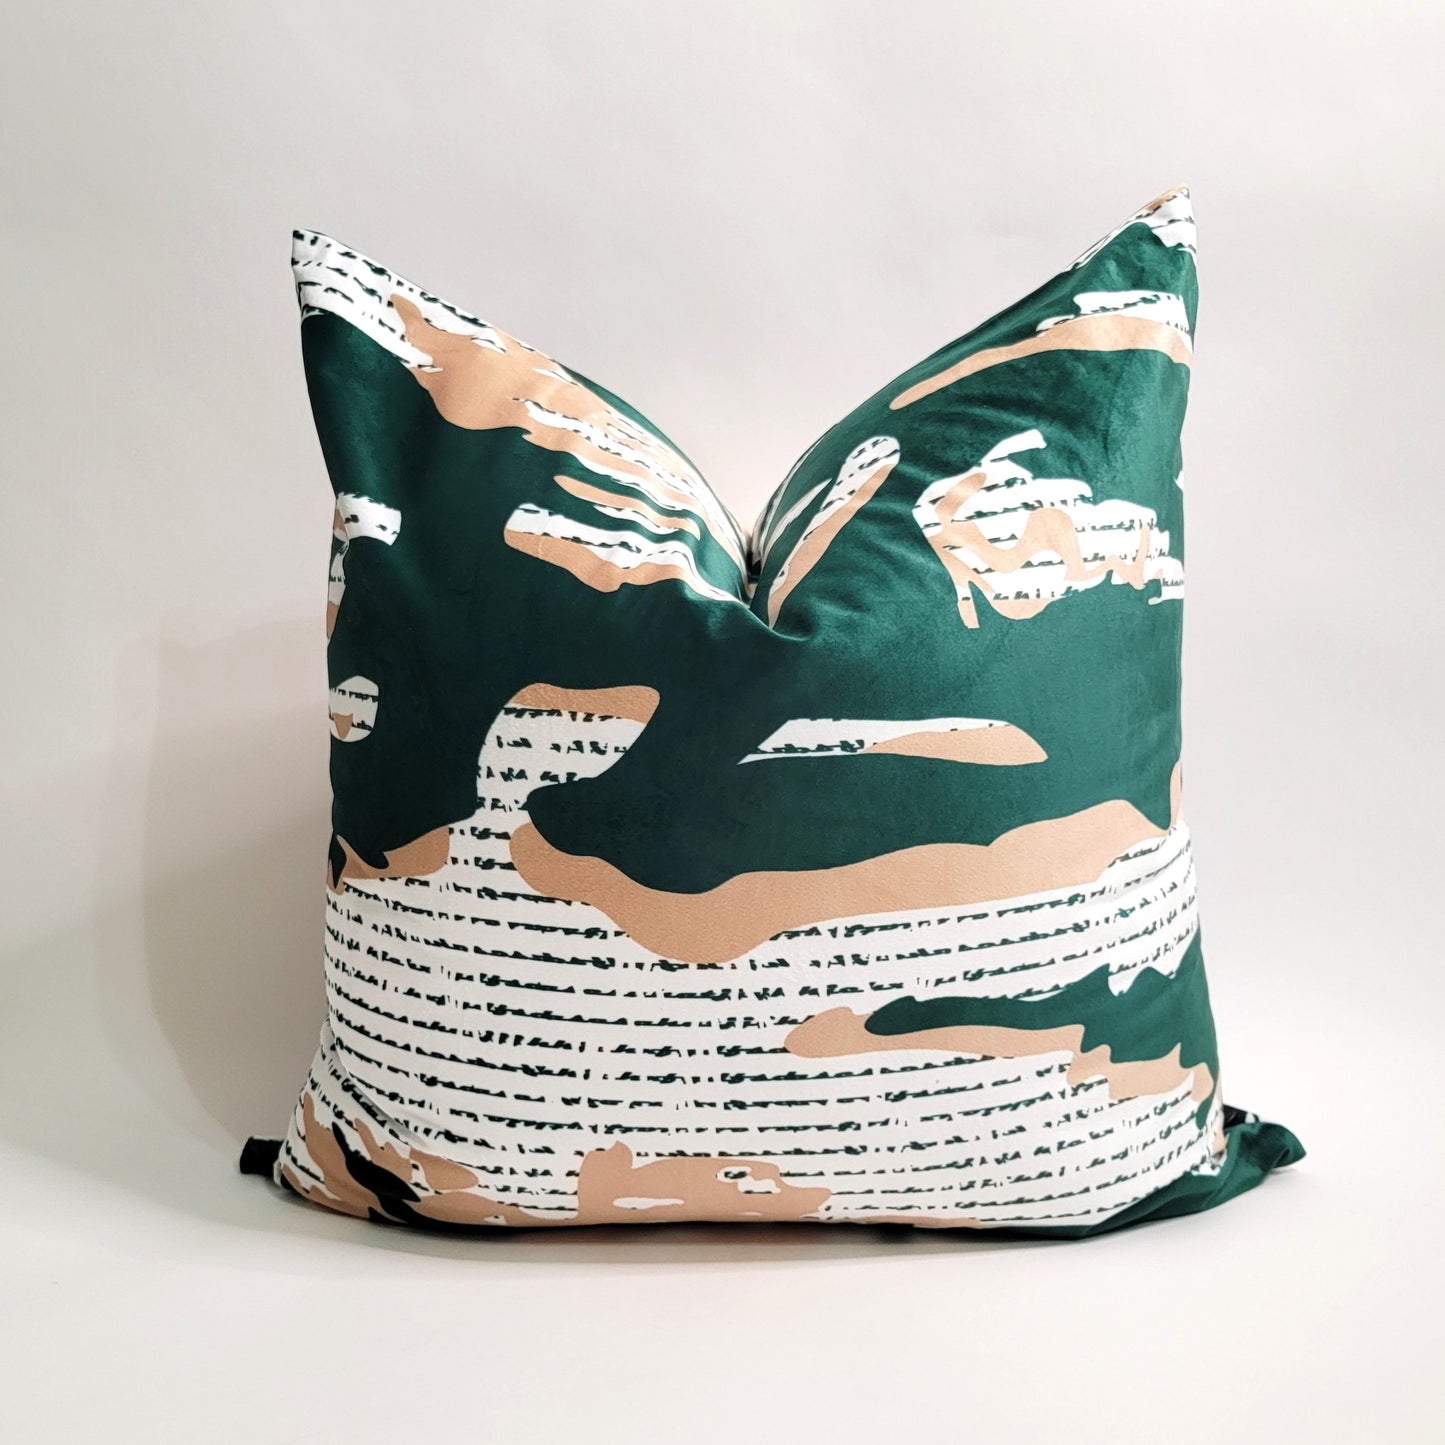 Abstract Green Velvet Decorative Throw Pillows